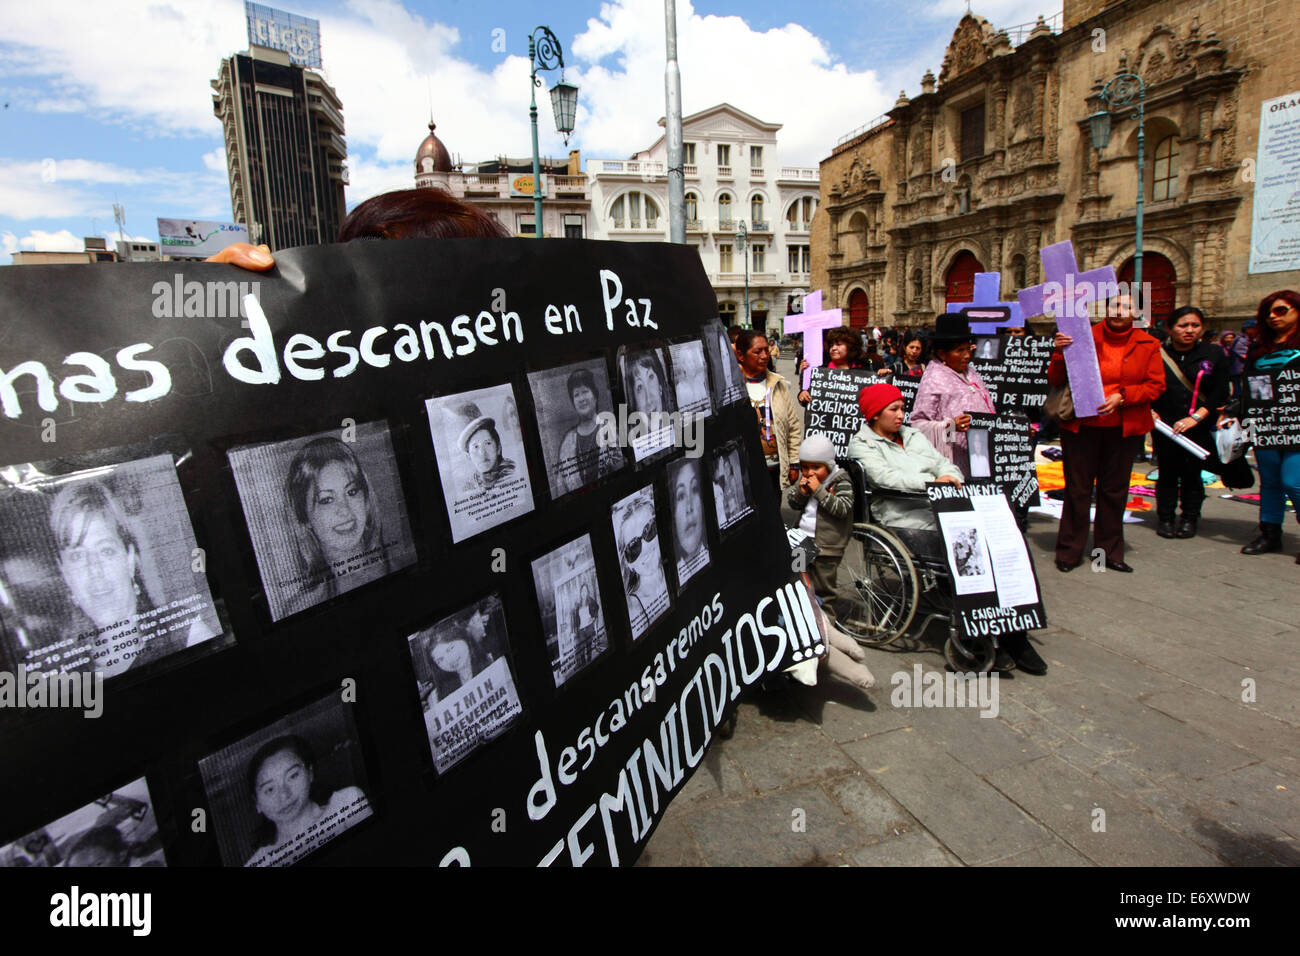 La Paz, Bolivien, 1. September 2014. Ein Aktivist von Frauenrechten trägt ein Plakat mit Fotos und Namen der Opfer während einer Kundgebung gegen Gewalt gegen Frauen zu protestieren. Der Marsch war auch den letzten Äußerungen von mehreren Kandidaten im aktuellen Wahlkampf, die scheinen, das Problem zu minimieren und diskriminieren Frauen zurückweise. Laut einem Bericht der WHO im Januar 2013 Bolivien ist das Land mit der höchsten Rate der Gewalt gegen Frauen in Lateinamerika, wurden seit 2006 453 Fälle von Frauenmorde in der aktuellen Regierung. Bildnachweis: James Brunker/Alamy Liv Stockfoto